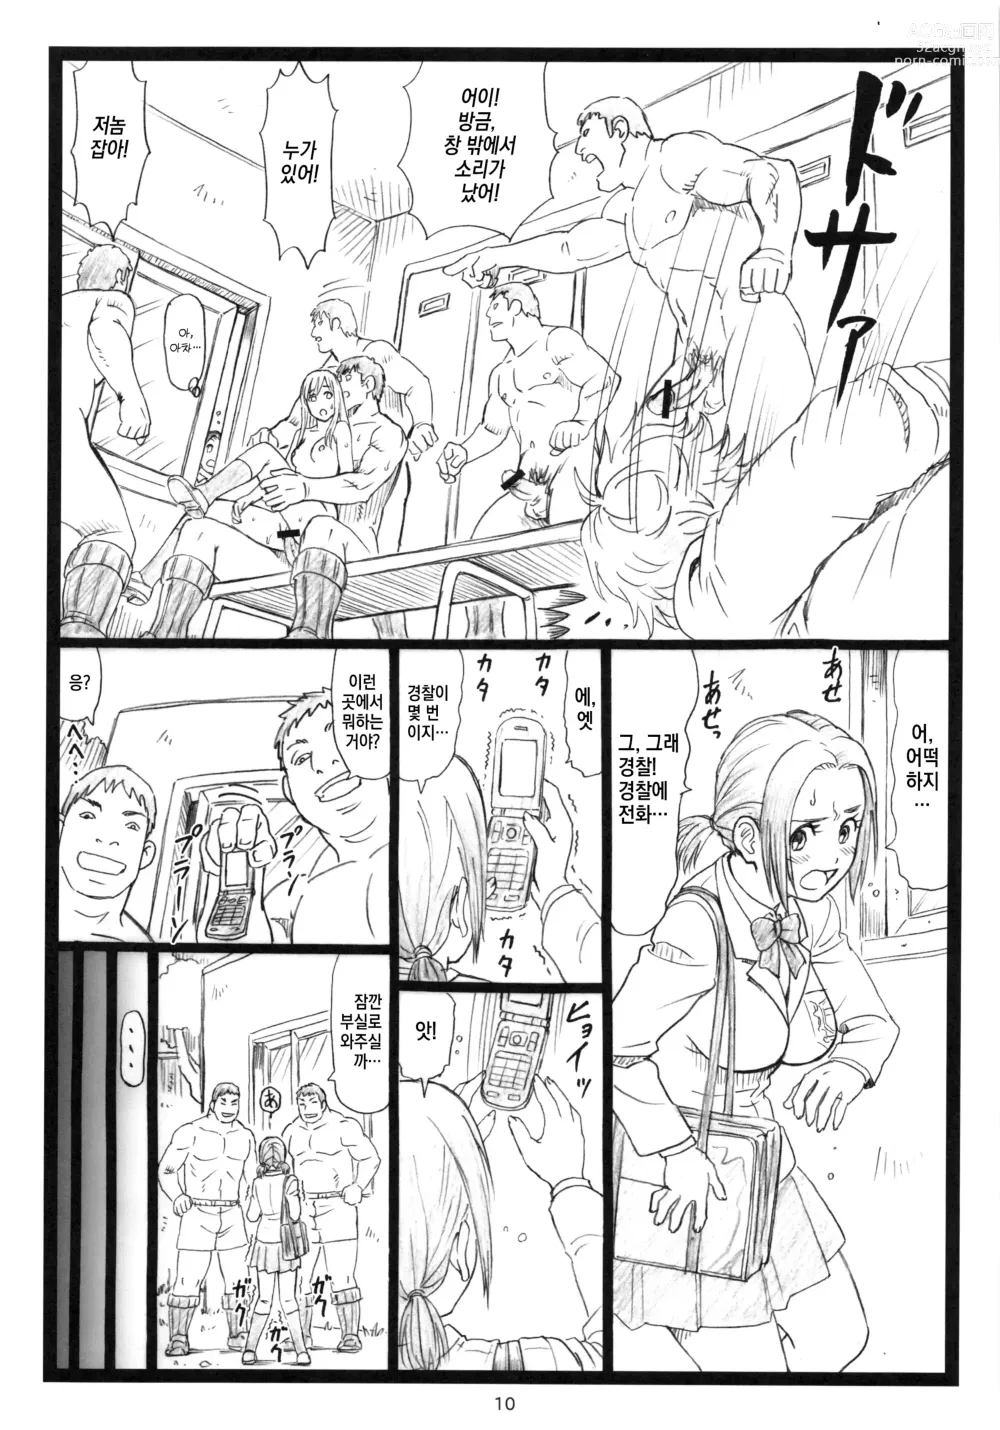 Page 9 of doujinshi Chihaya chiru